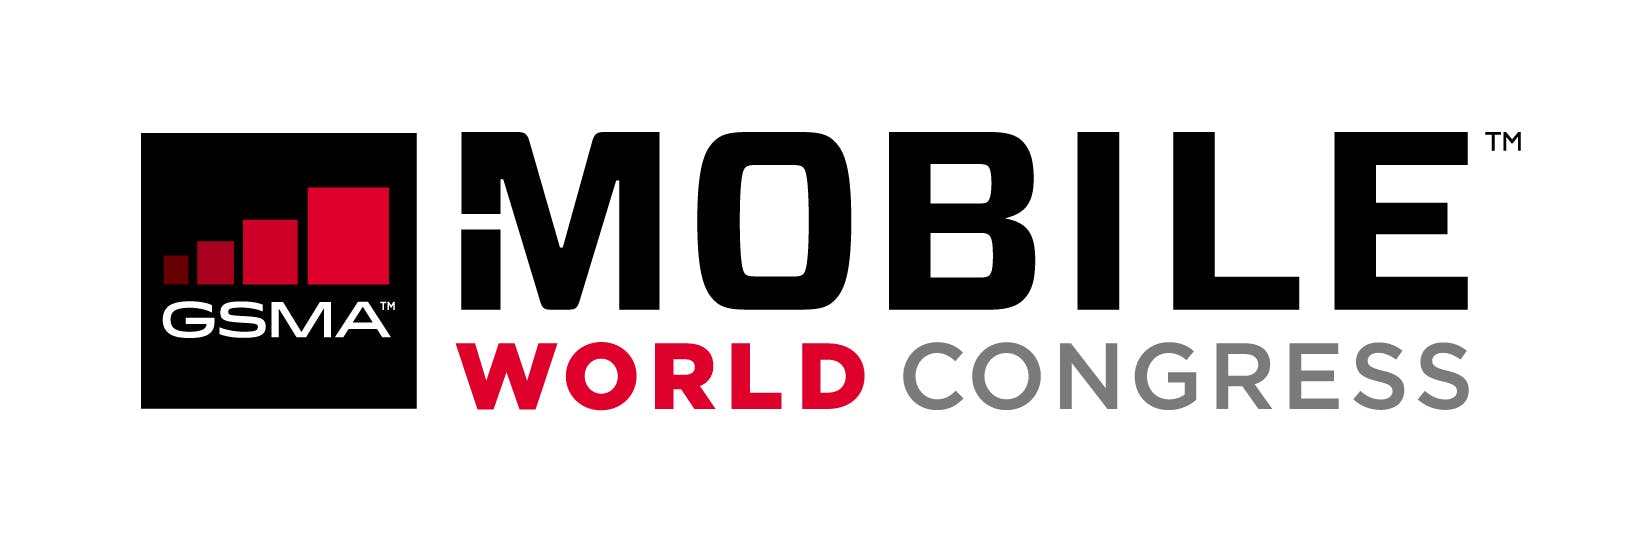 Mobile World Congress 2017 - Mobile World Congress